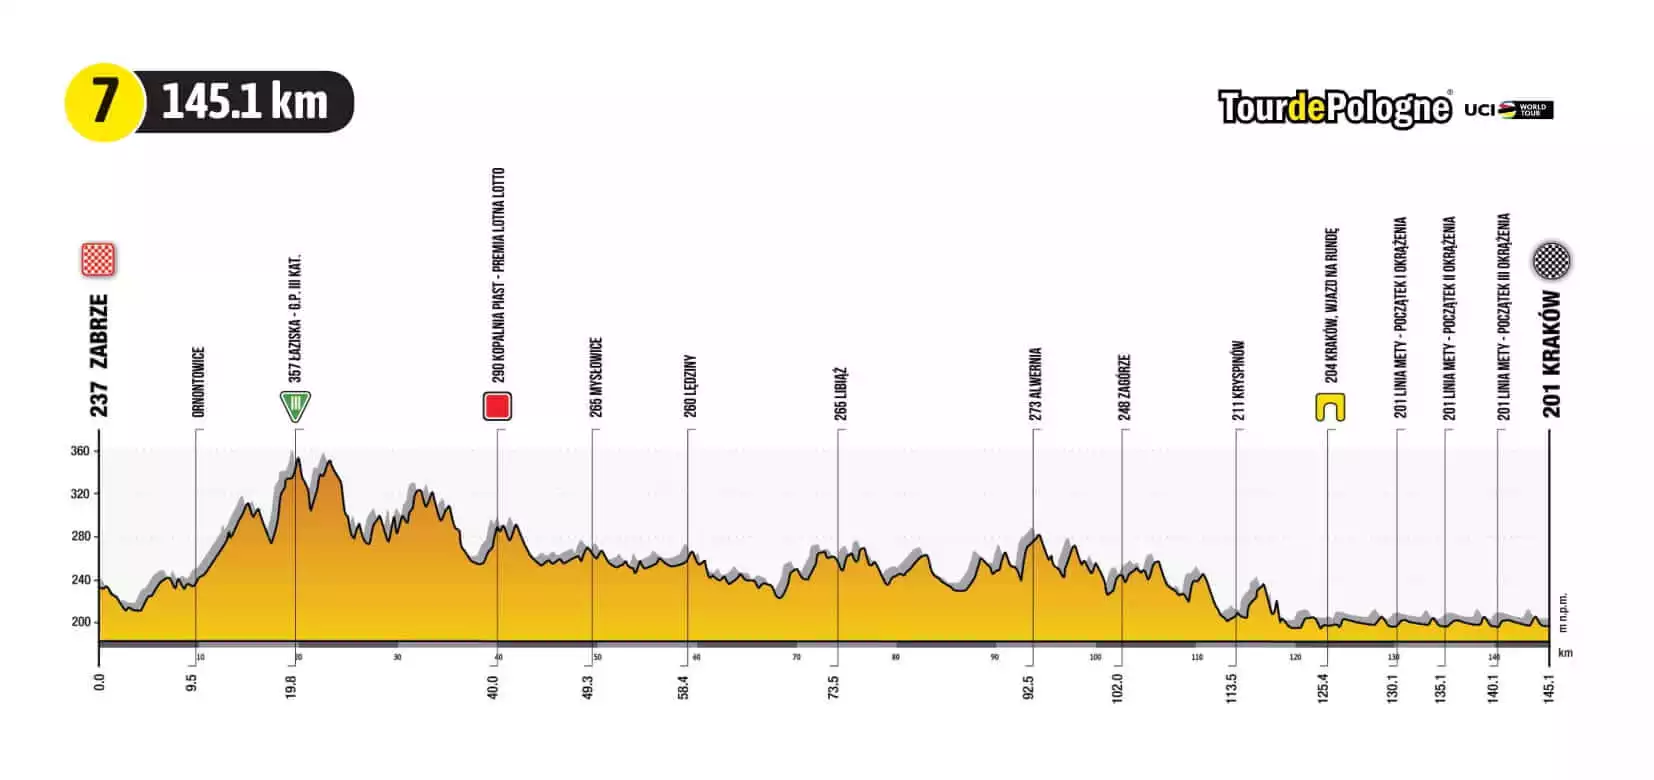 Tour de Pologne 2021 Stage 7 Profile